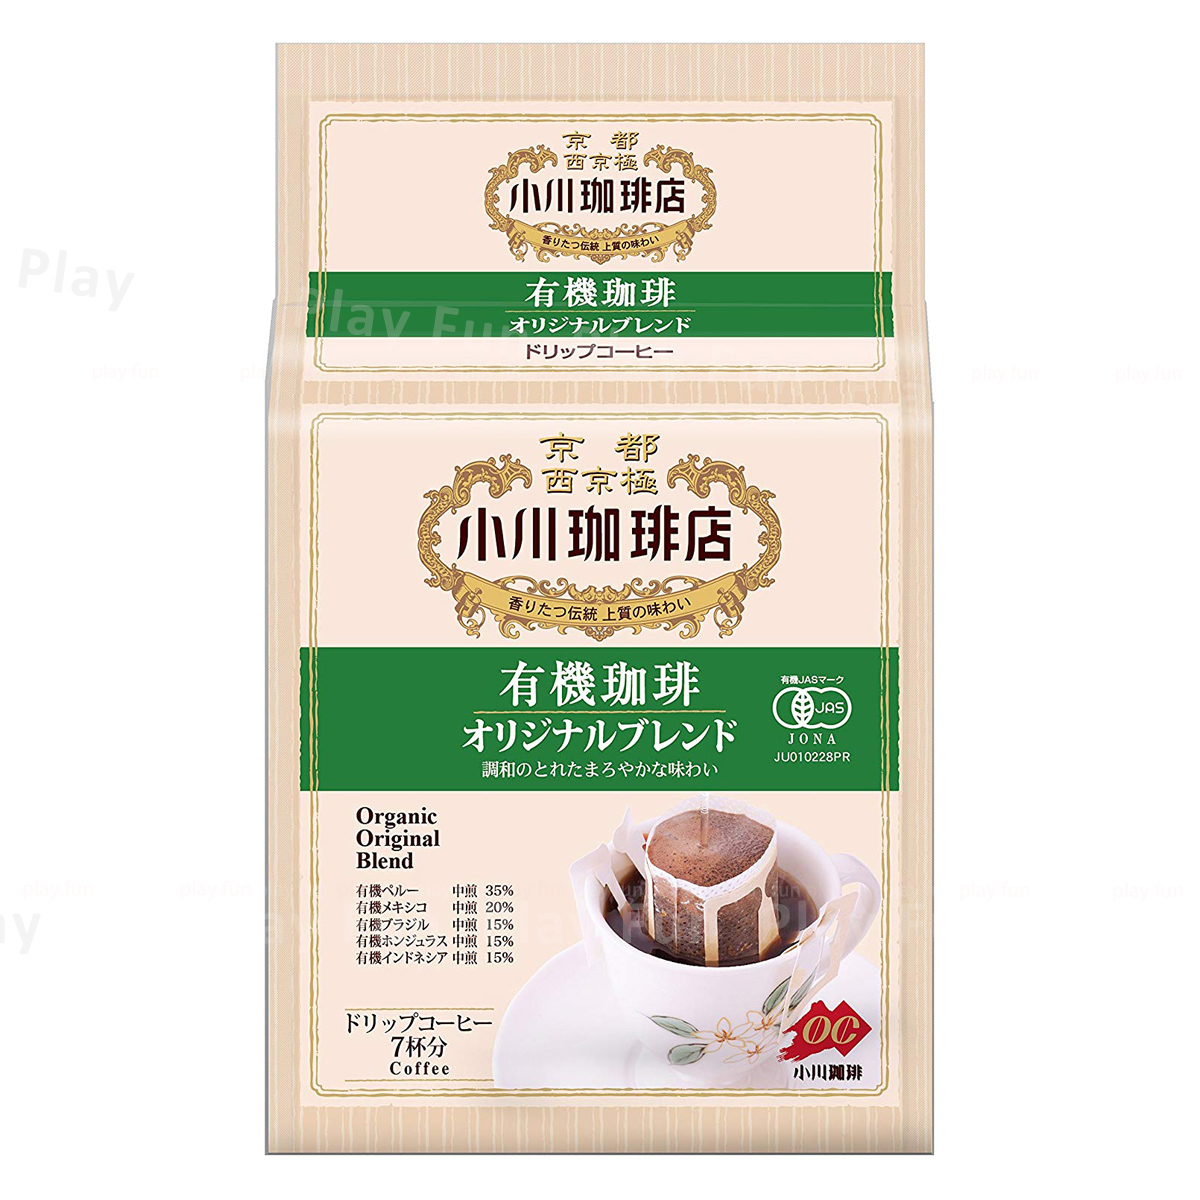 小川珈琲店 - 有機滴濾式咖啡 (10g x 7包)